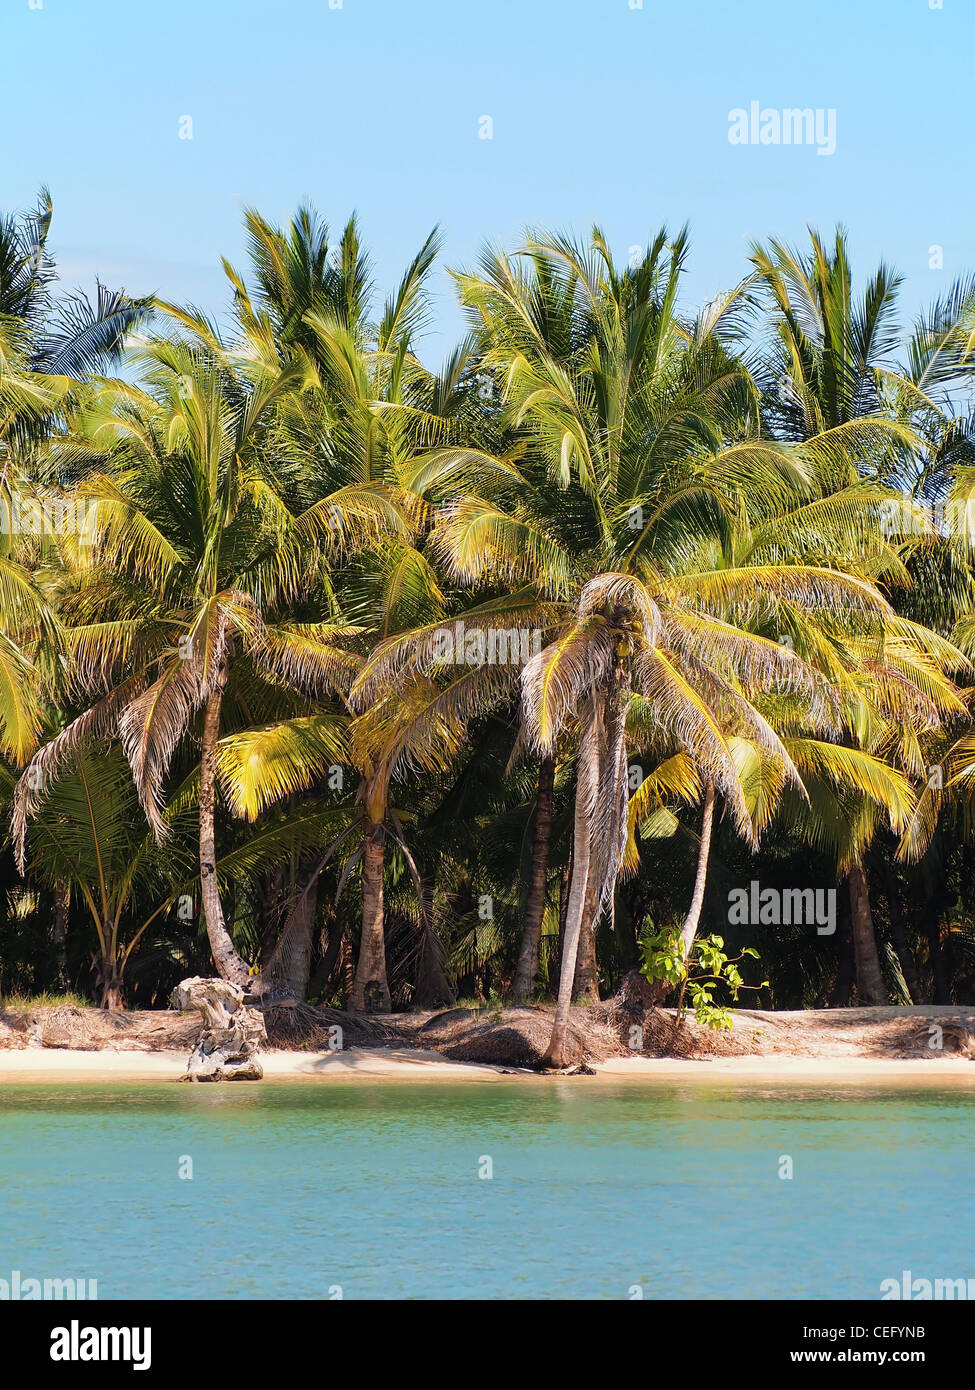 Spiaggia tropicale con palme di cocco Foto Stock